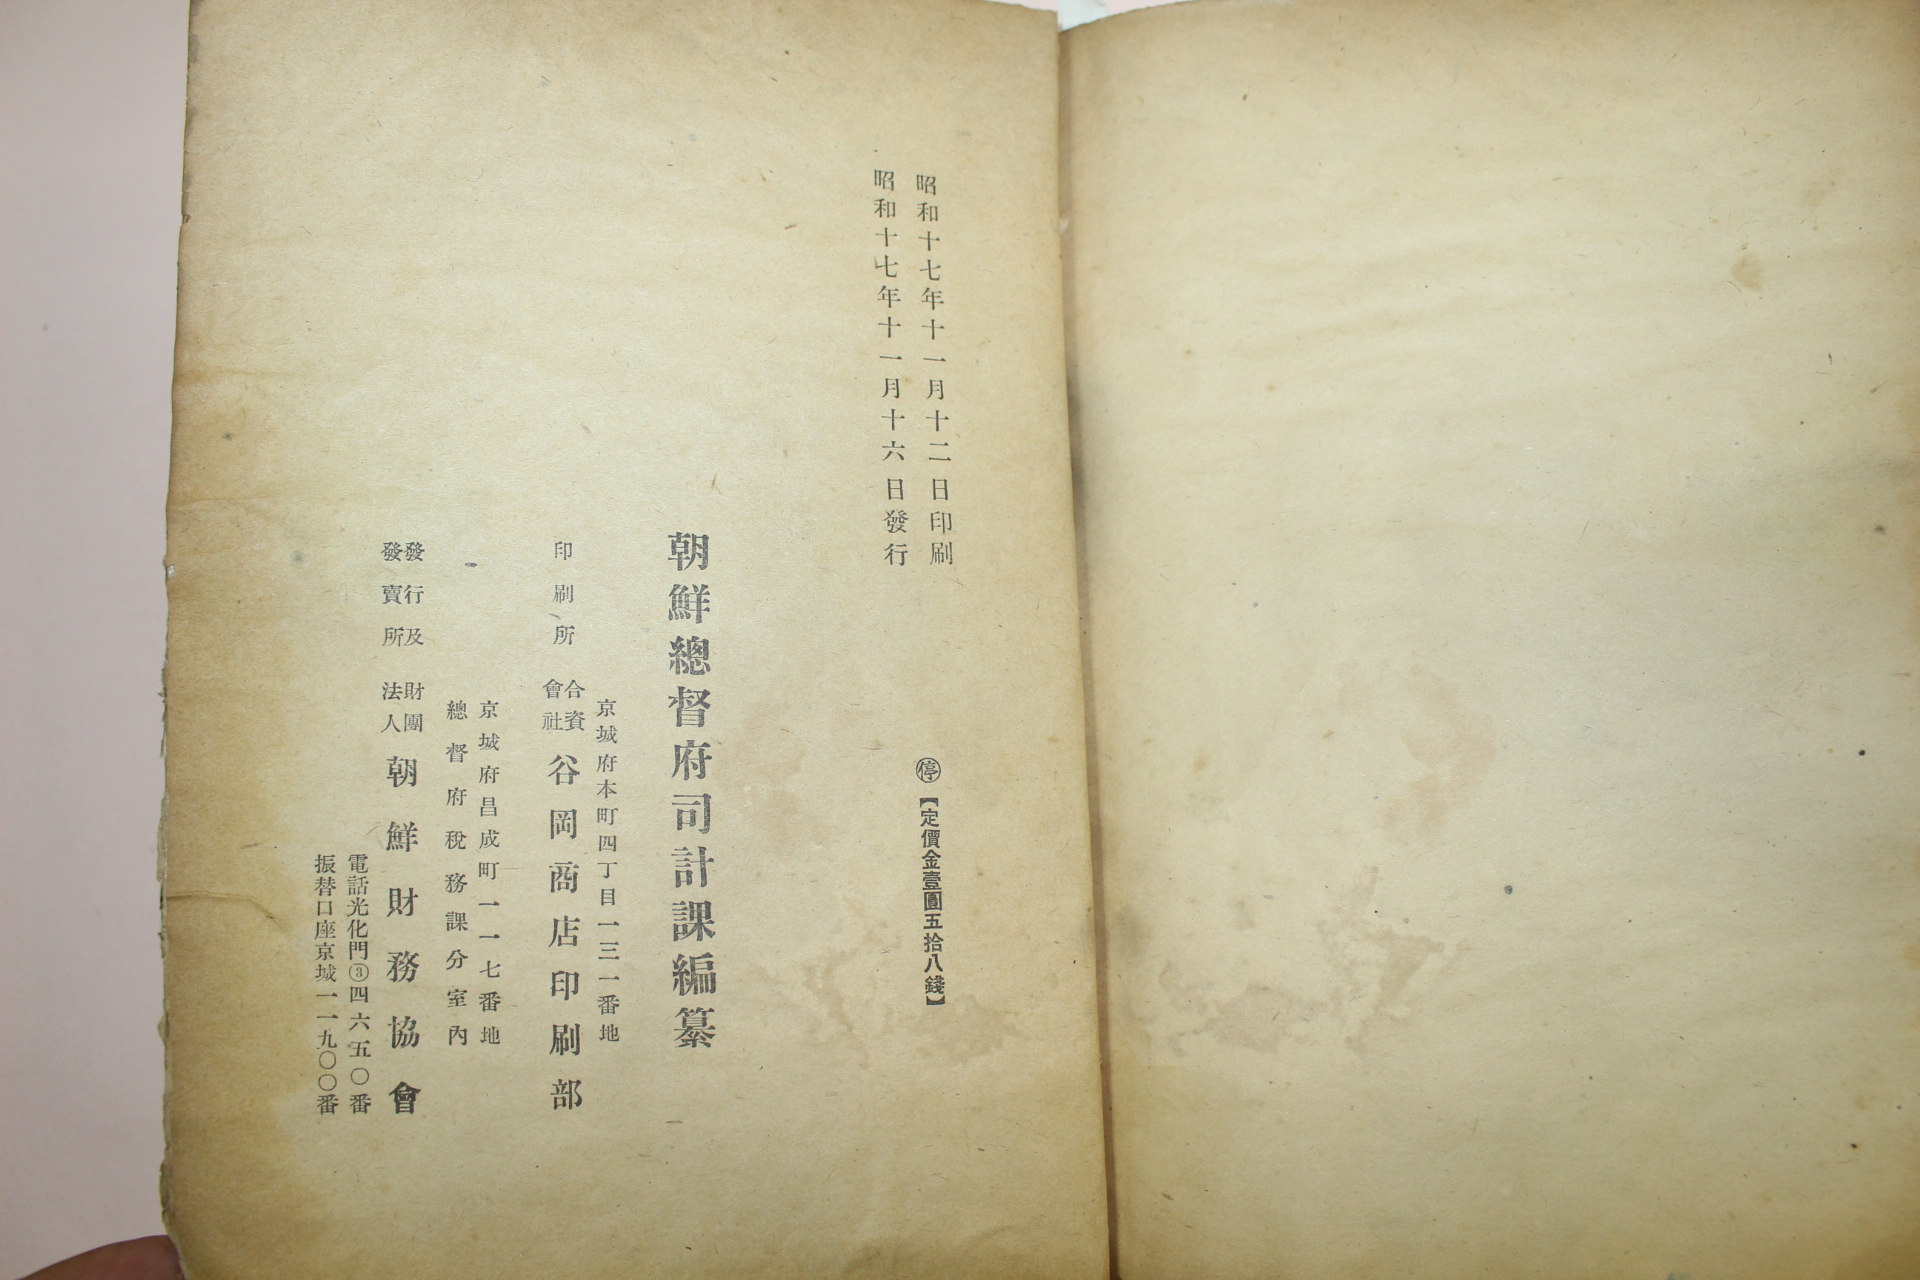 1942년 조선총독부 각도부읍면이정표(各道府邑面里程表) 1책완질